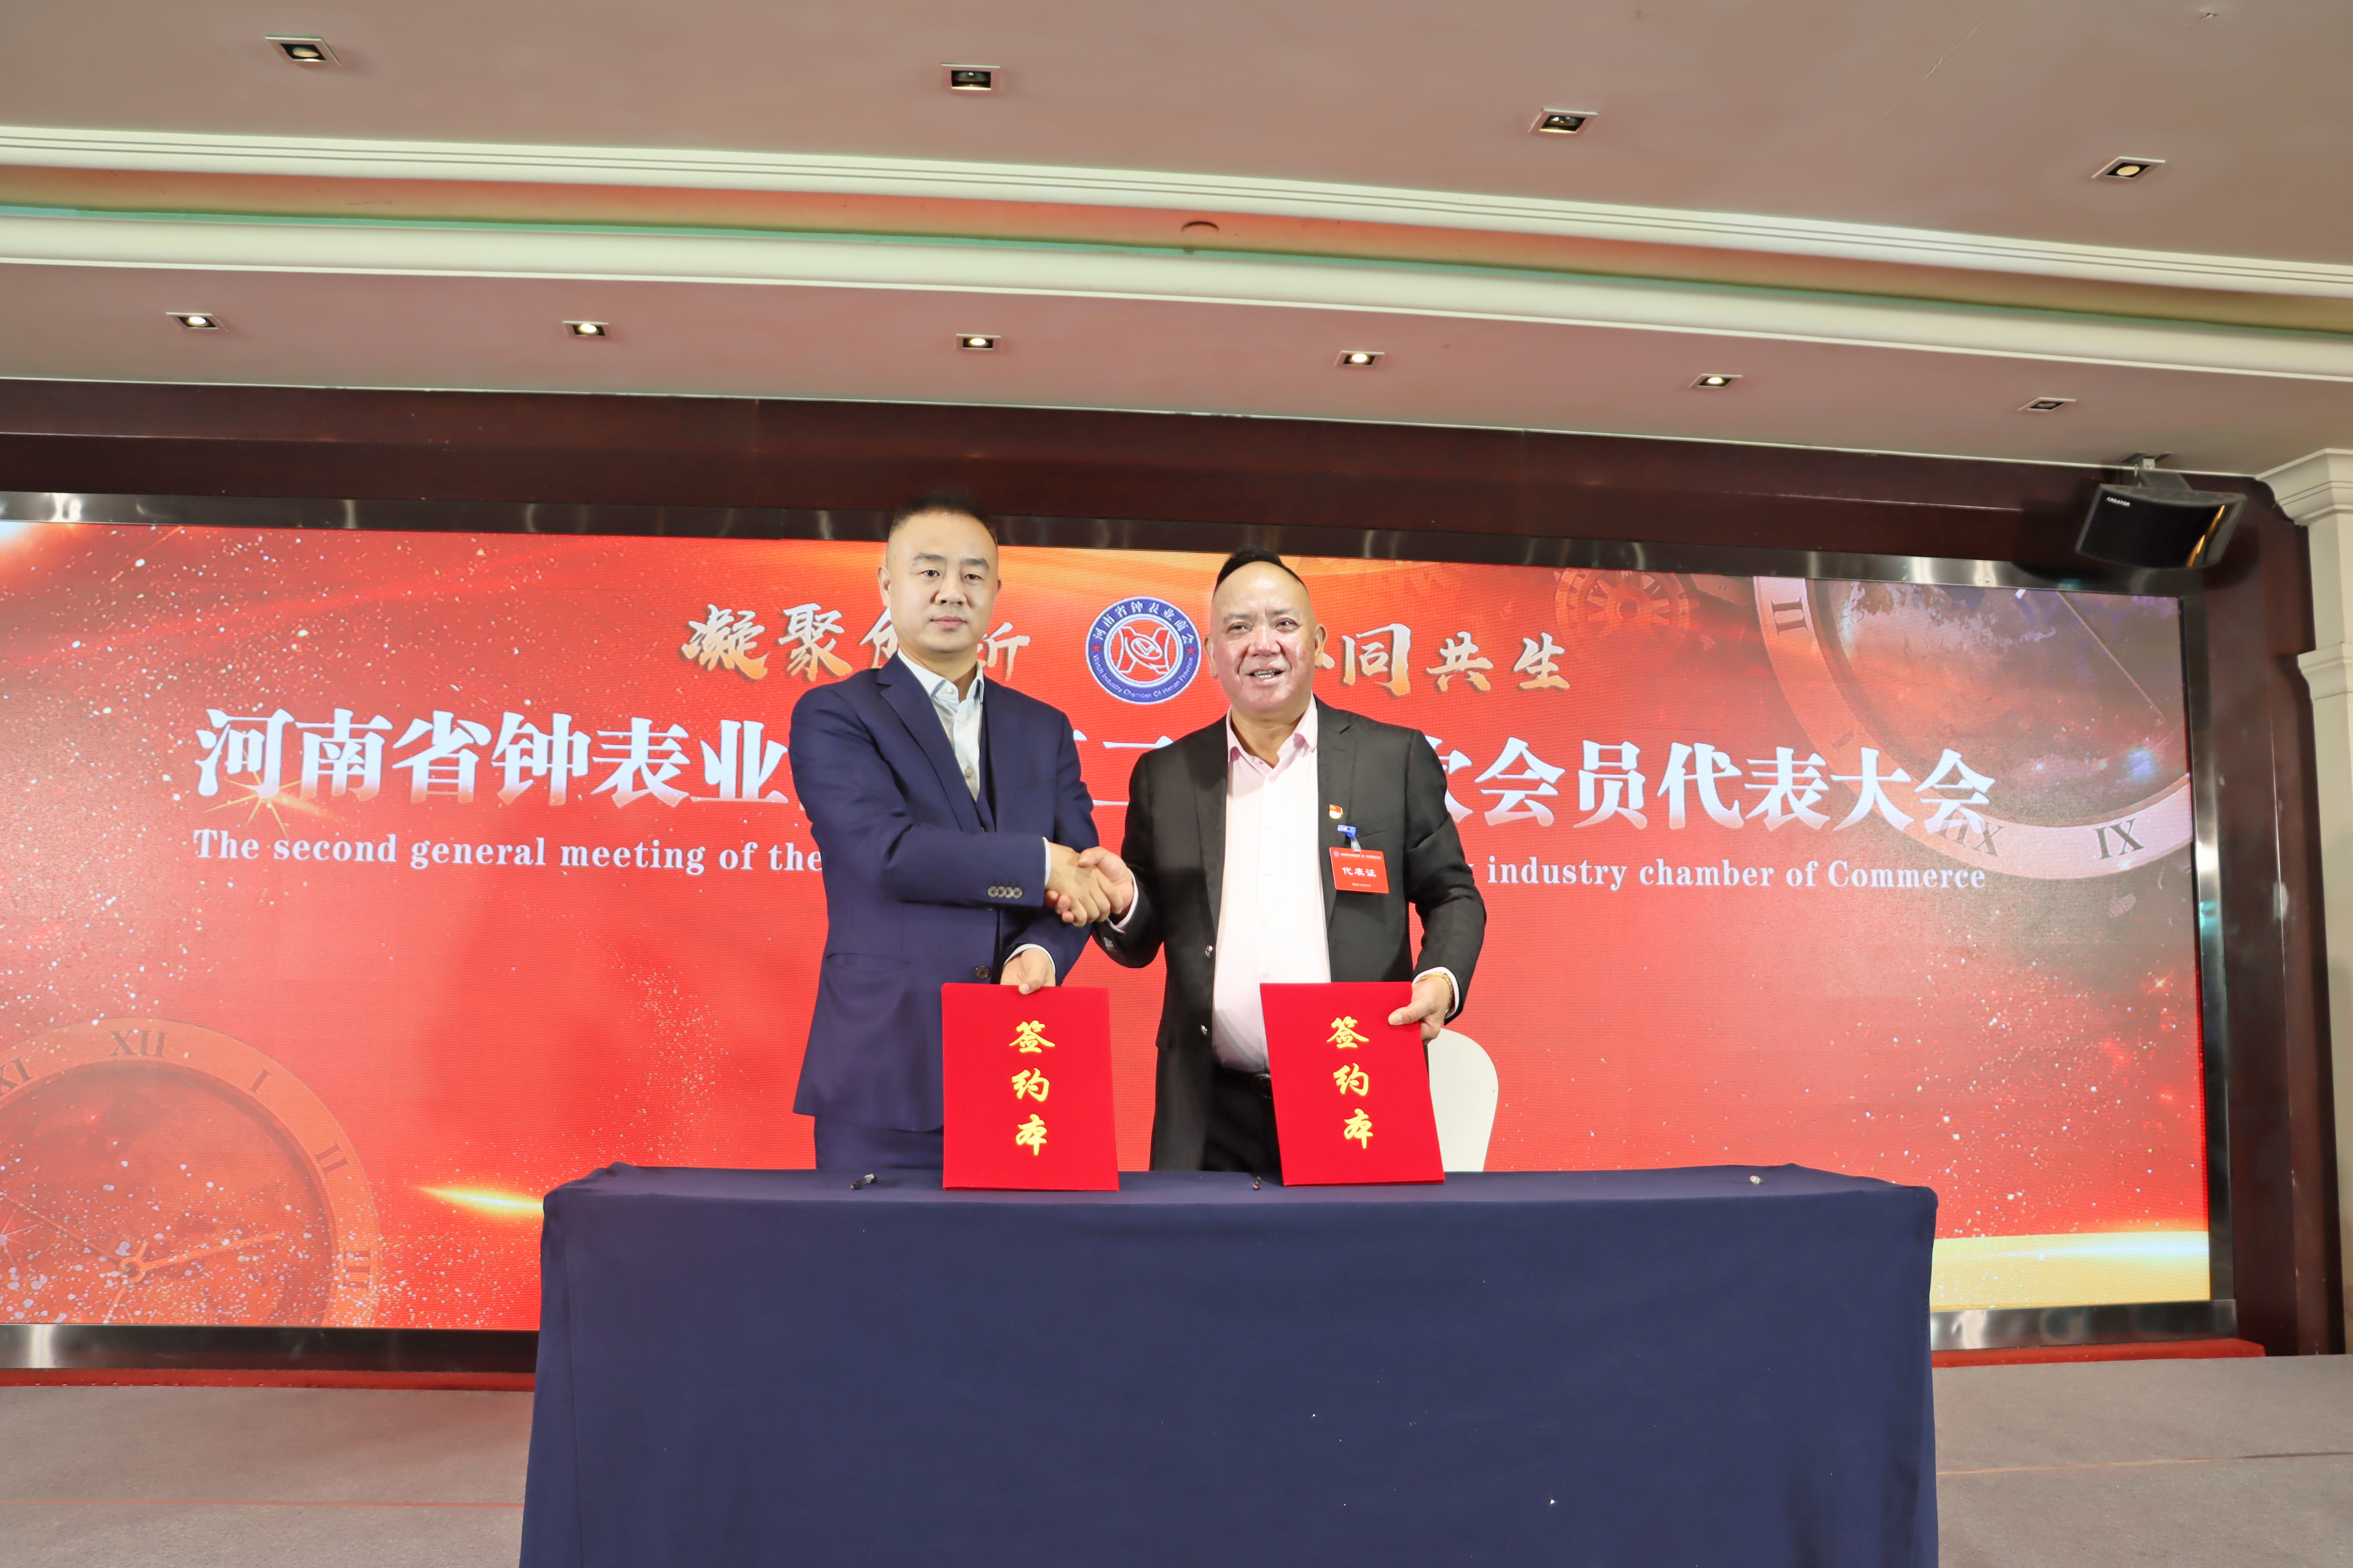 河南省钟表业商会与郑大干细胞库签订战略合作协议